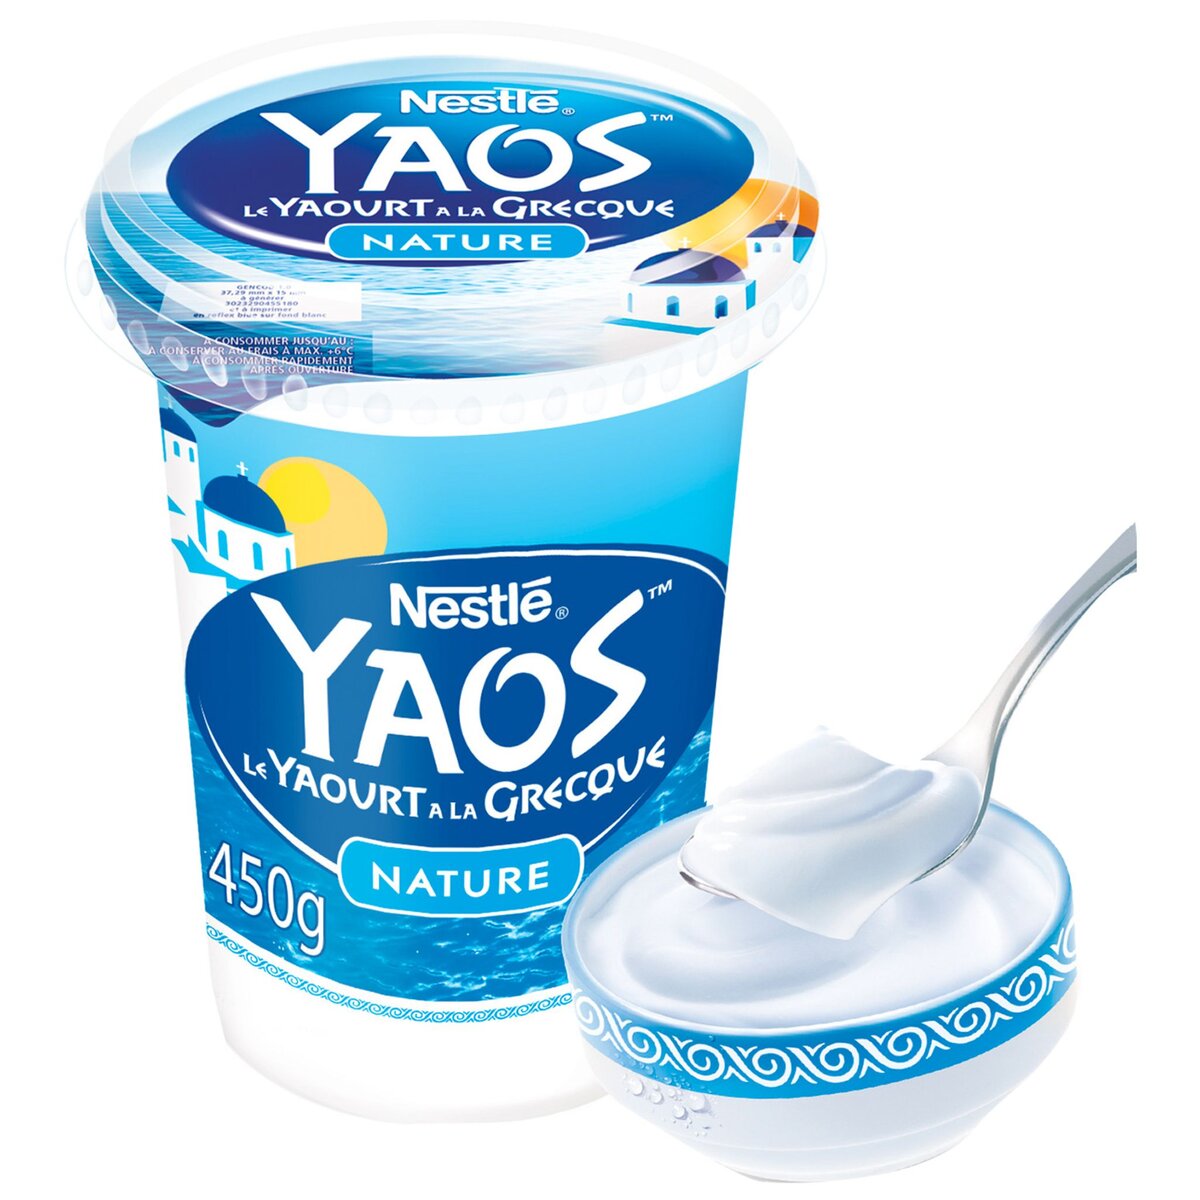 NESTLE Nestlé Yaos yaourt à la grecque nature 450g